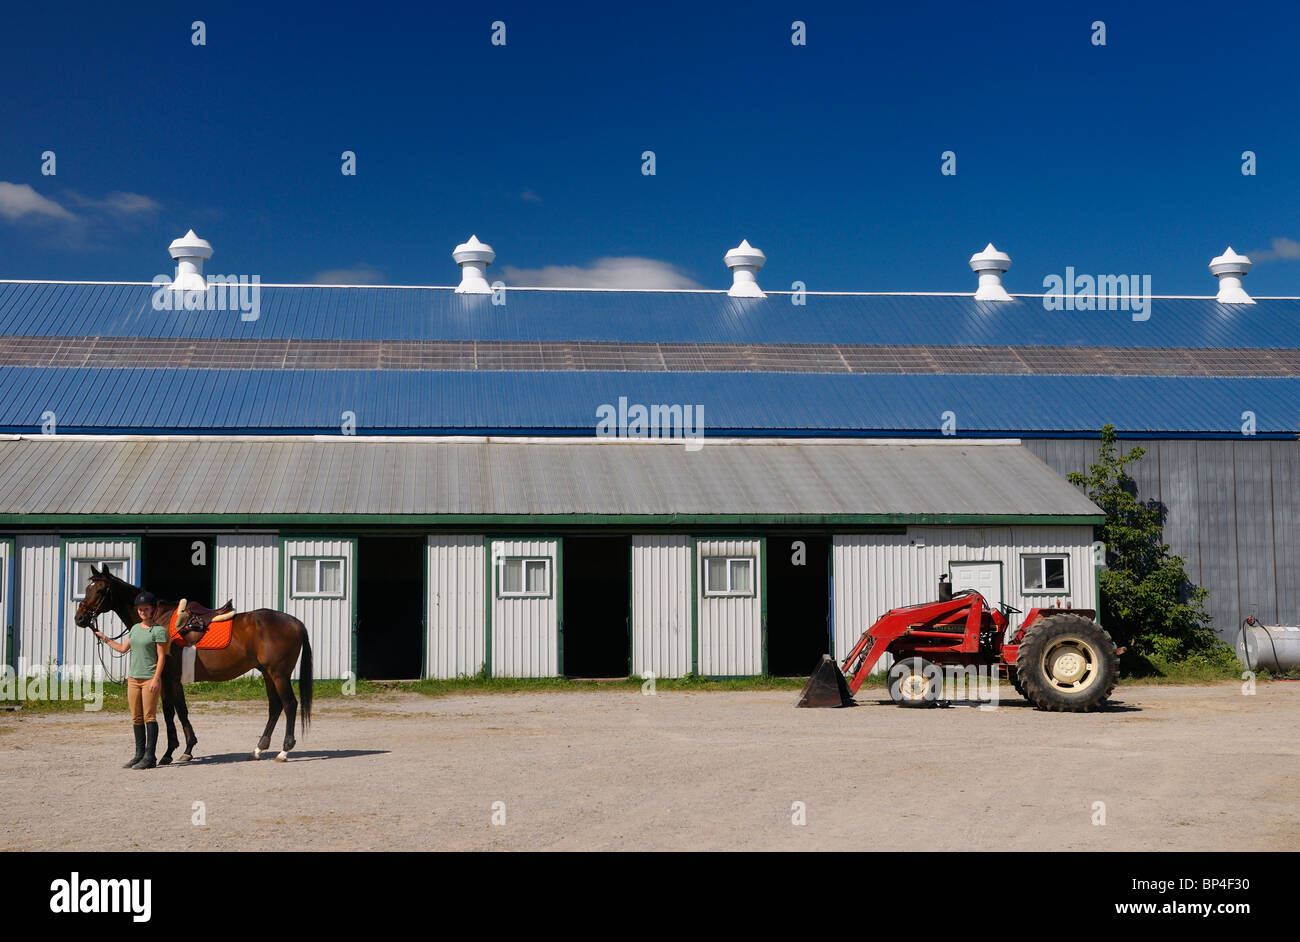 Reiter ihr Pferd ausreiten Stall und Reitplatz Arena mit Traktor im Sommer Ontario Kanada Holding Stockfoto